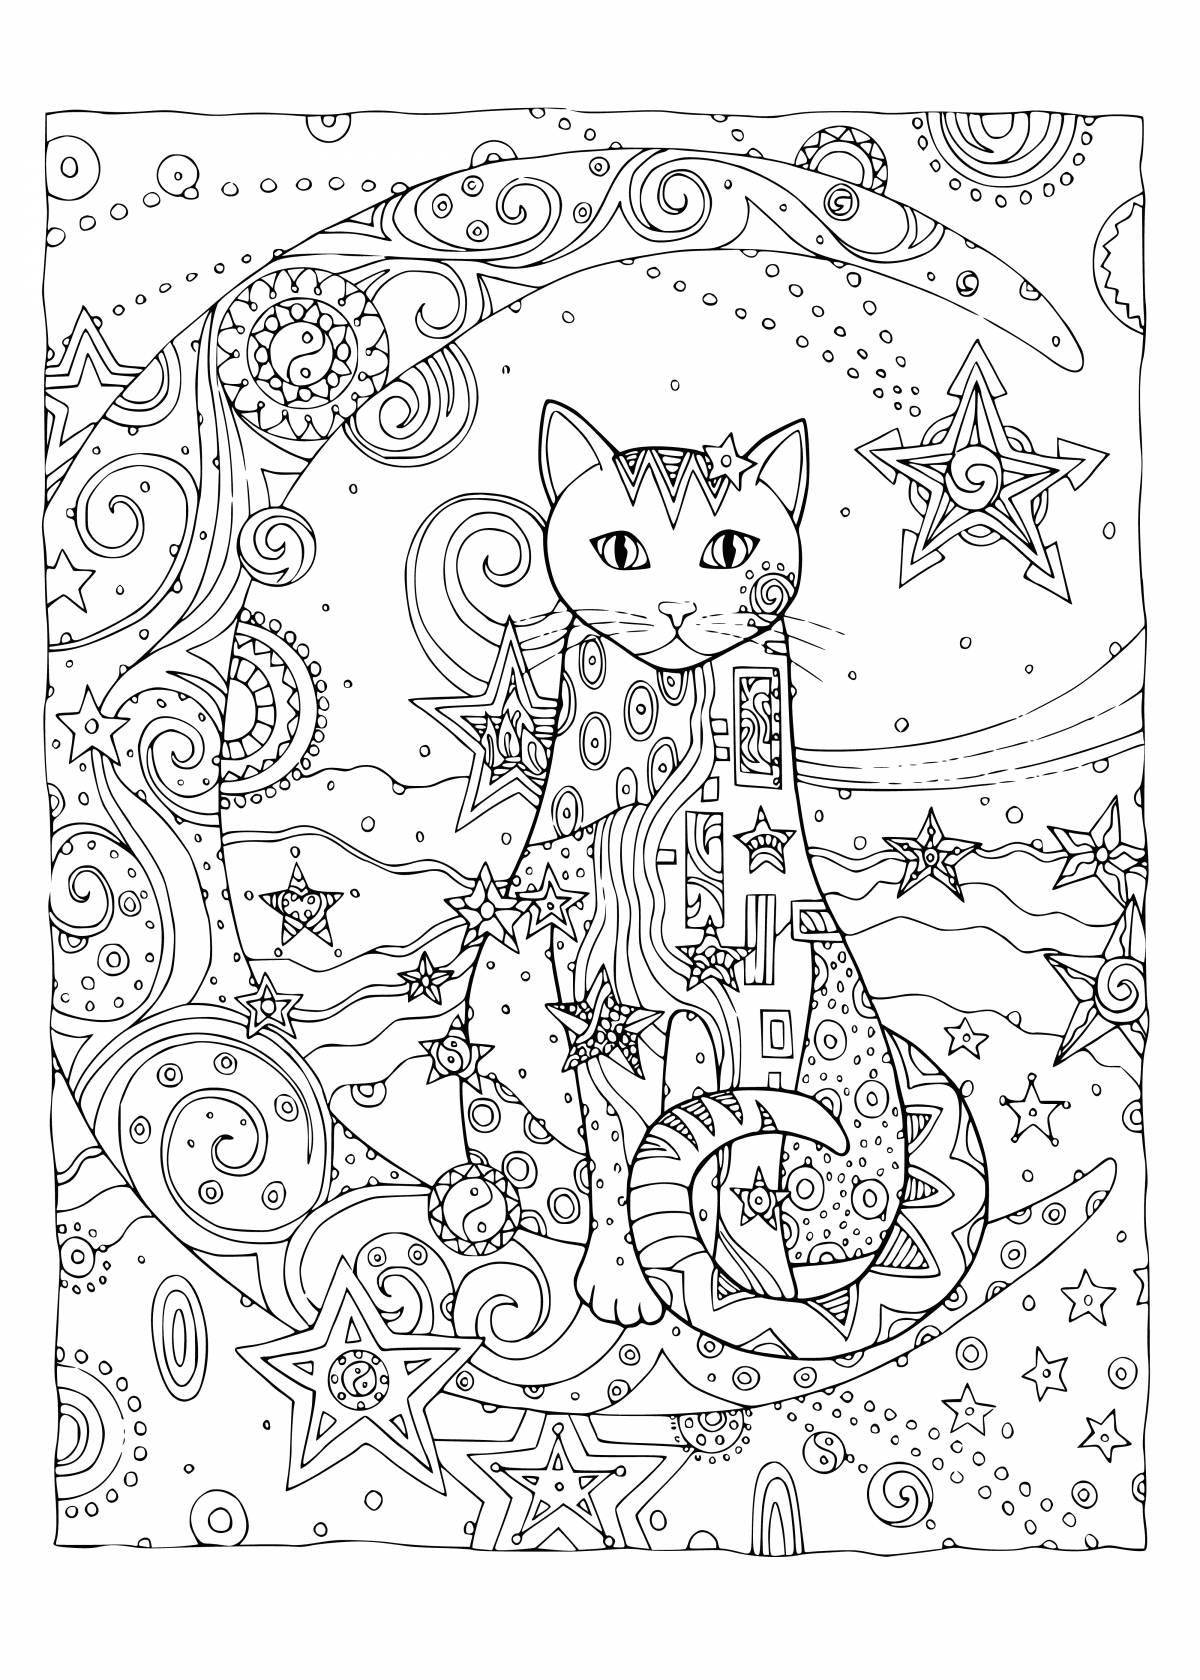 Vivacious coloring page complex cat